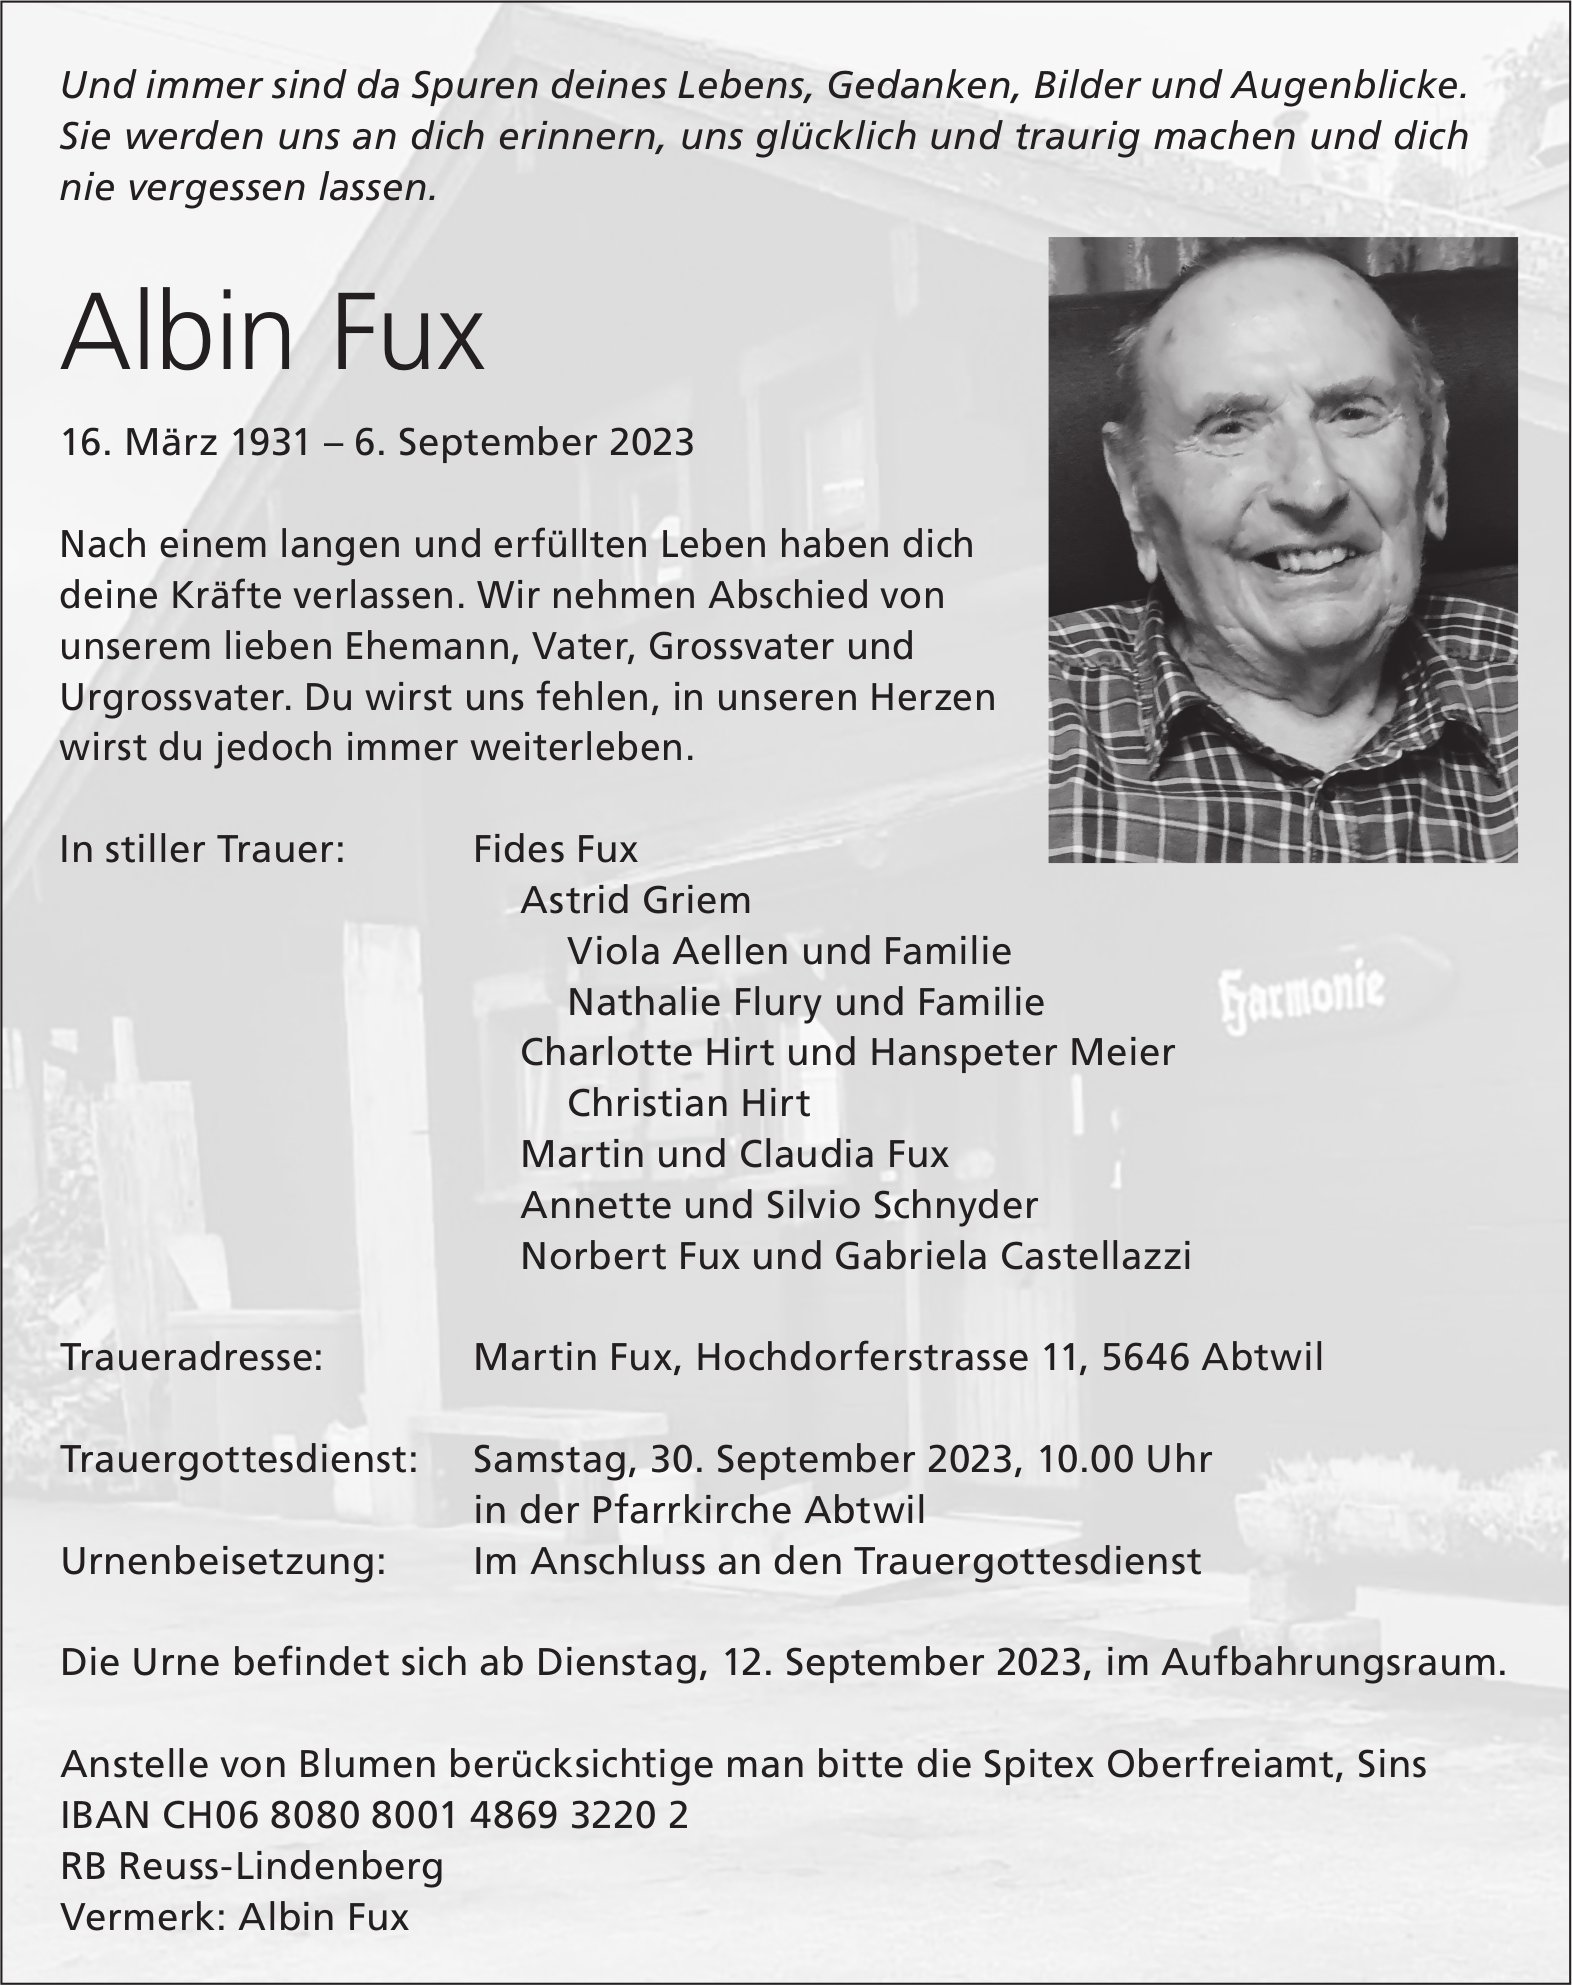 Fux Albin, September 2023 / TA